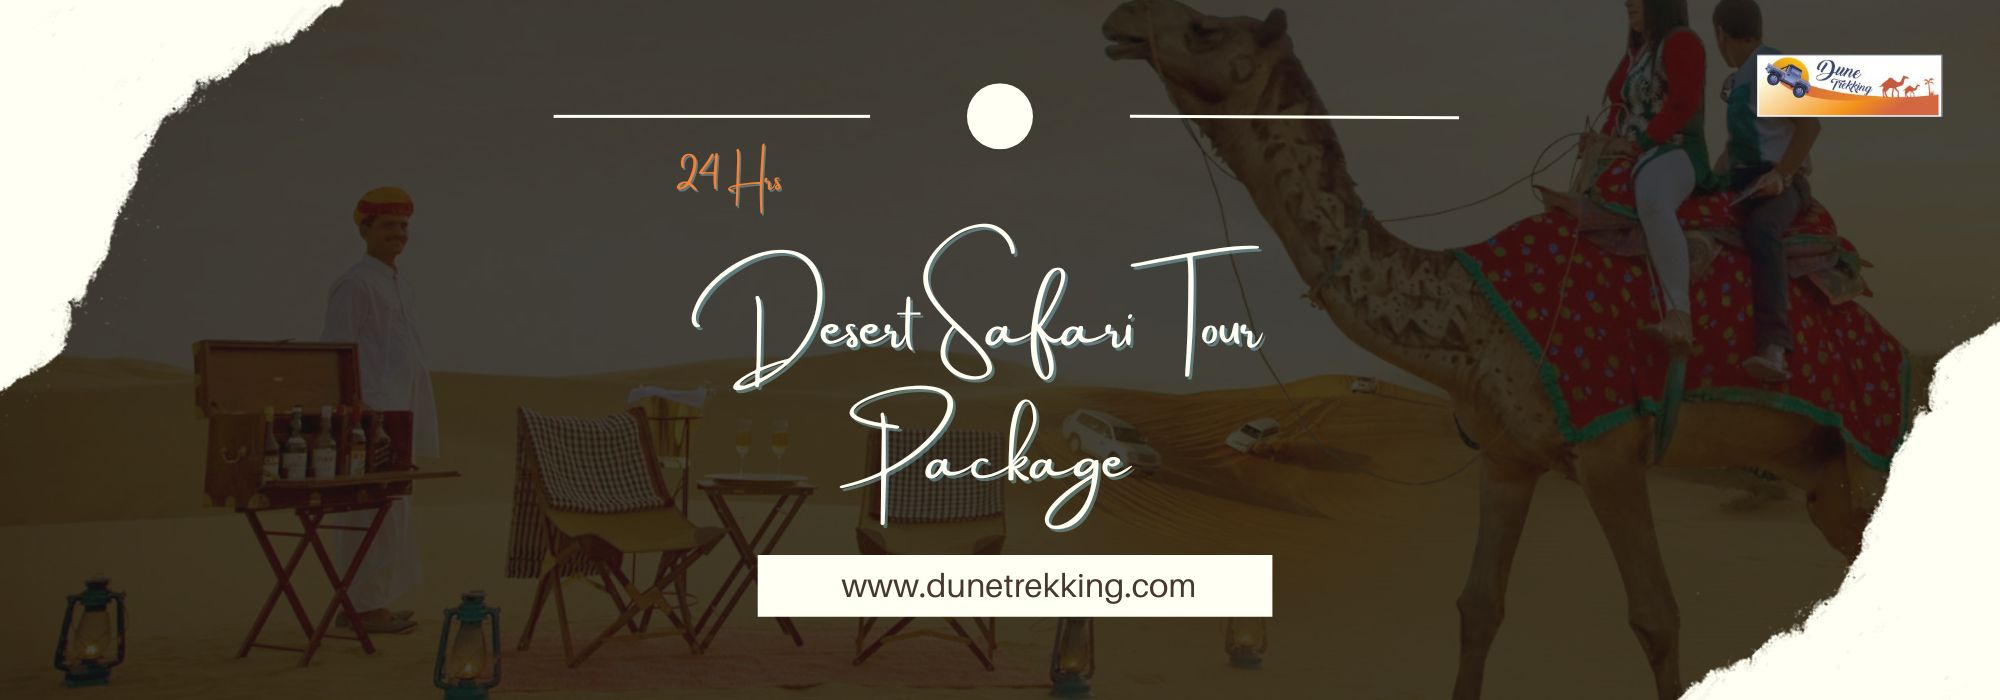 24 Hrs Desert Safari Tour Package- dunetrekking